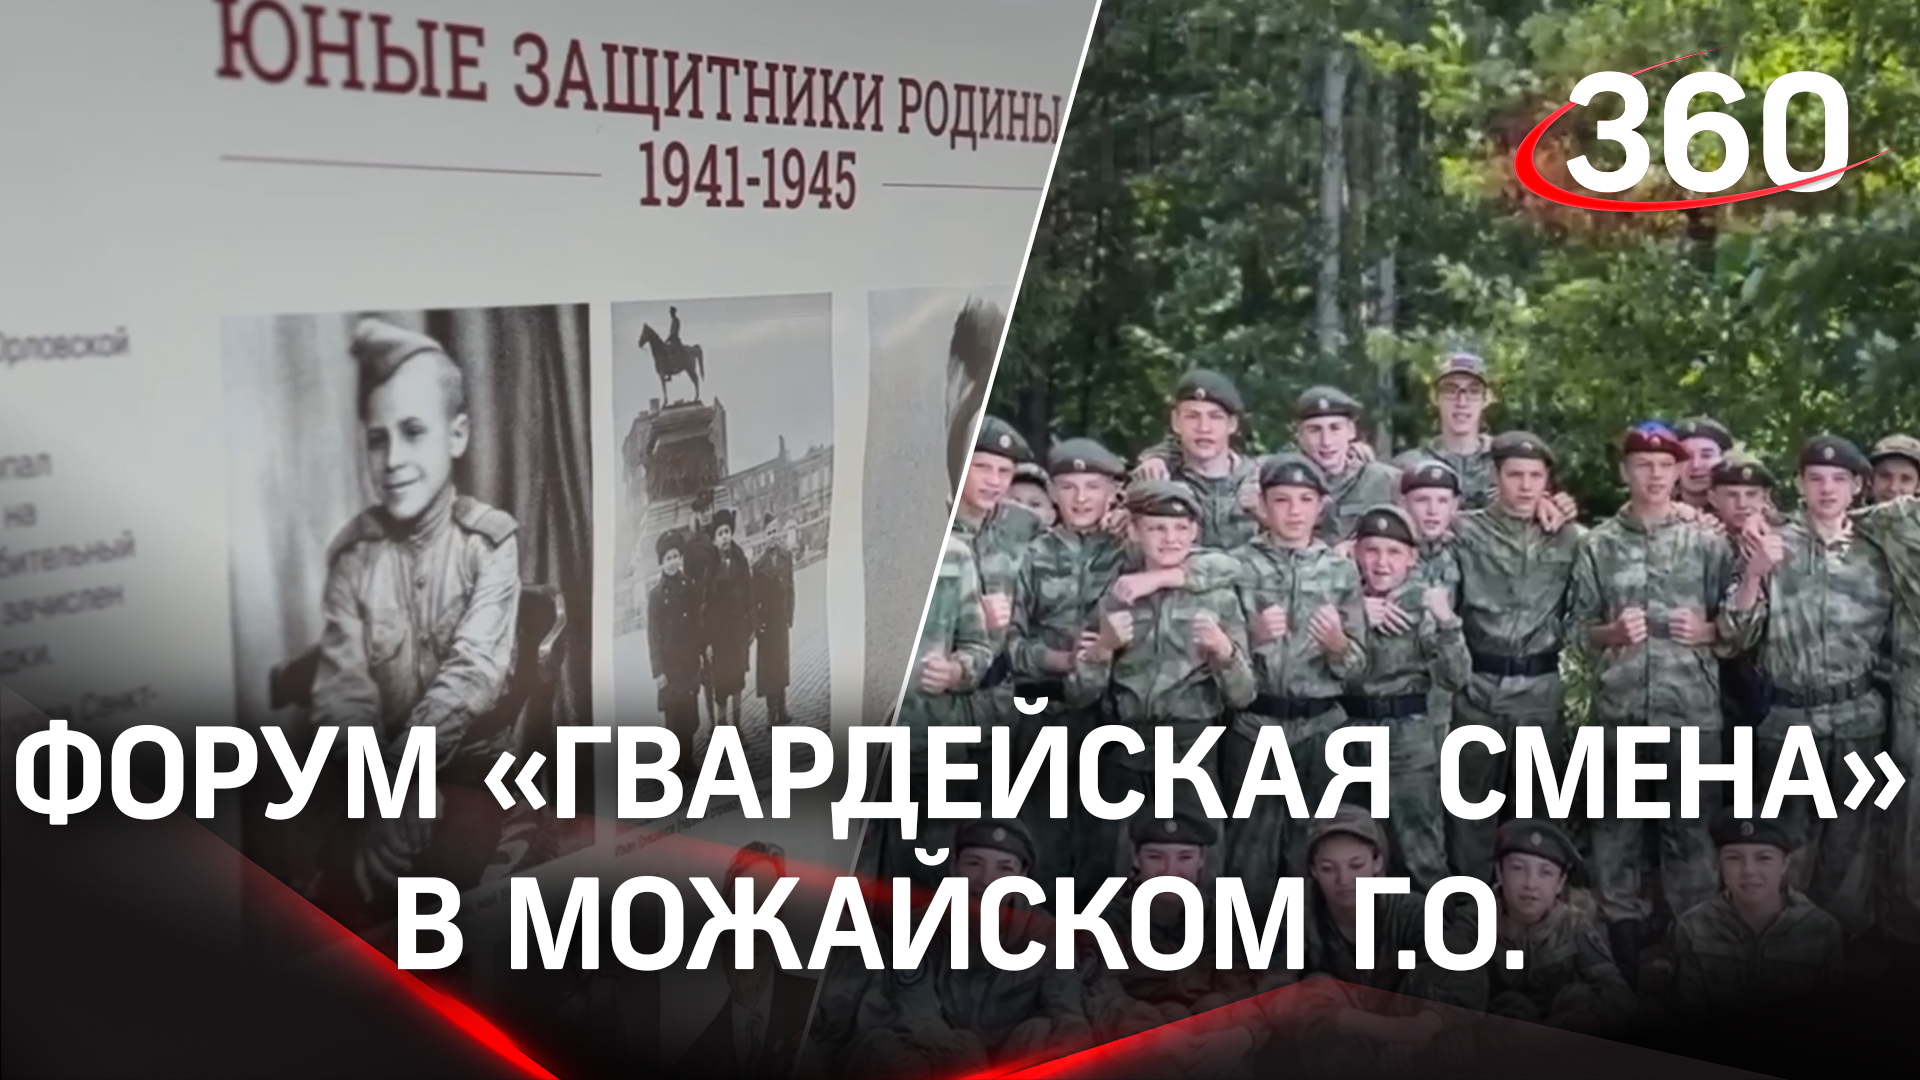 Всероссийский военно-патриотический форум «Гвардейская смена»